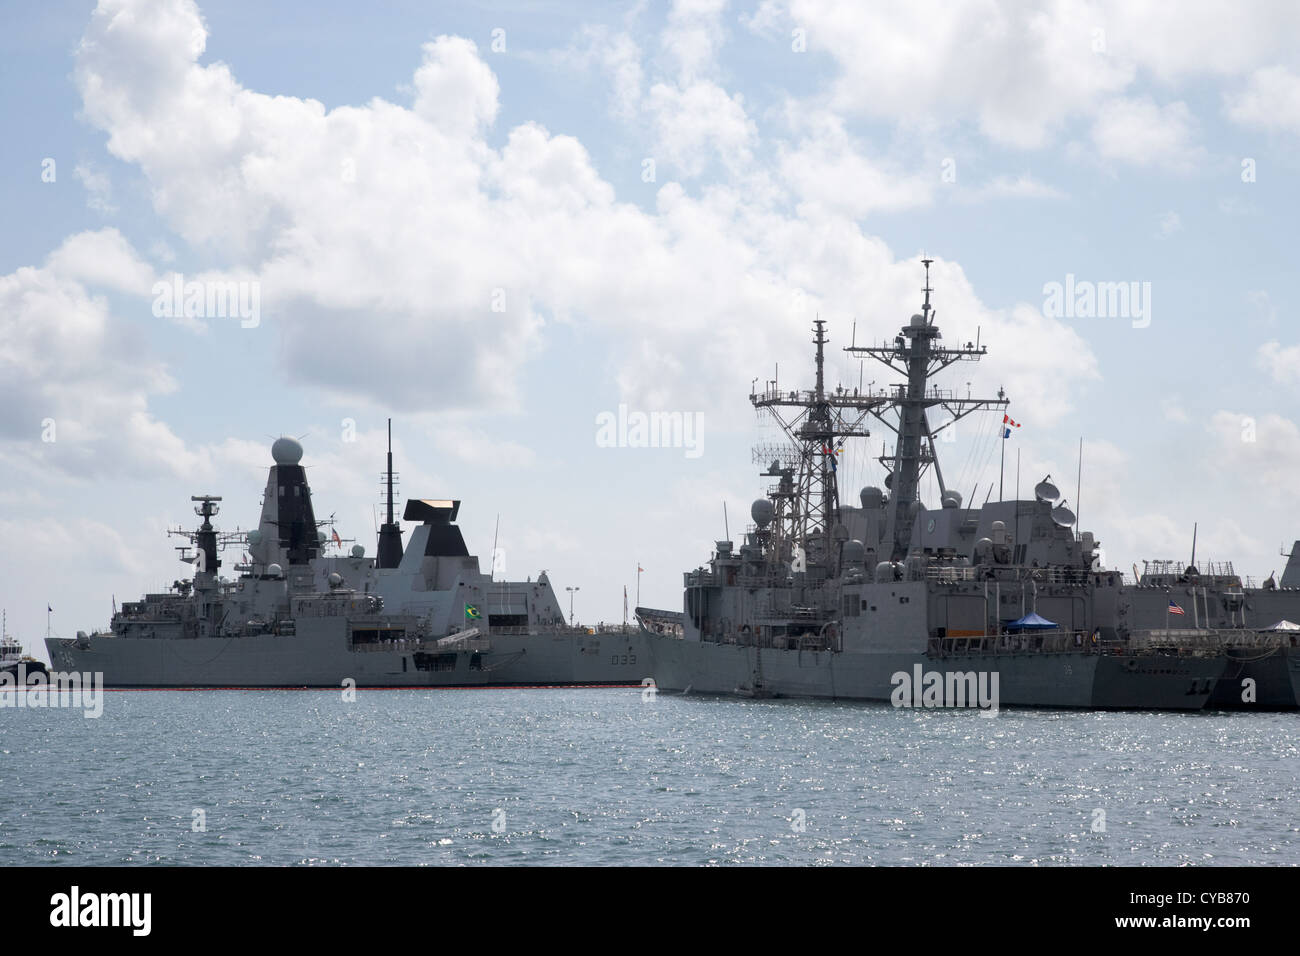 Británico de buques de guerra de la Marina de EEUU y Brasil la mole del muelle del puerto de Key West Florida, EE.UU. Foto de stock